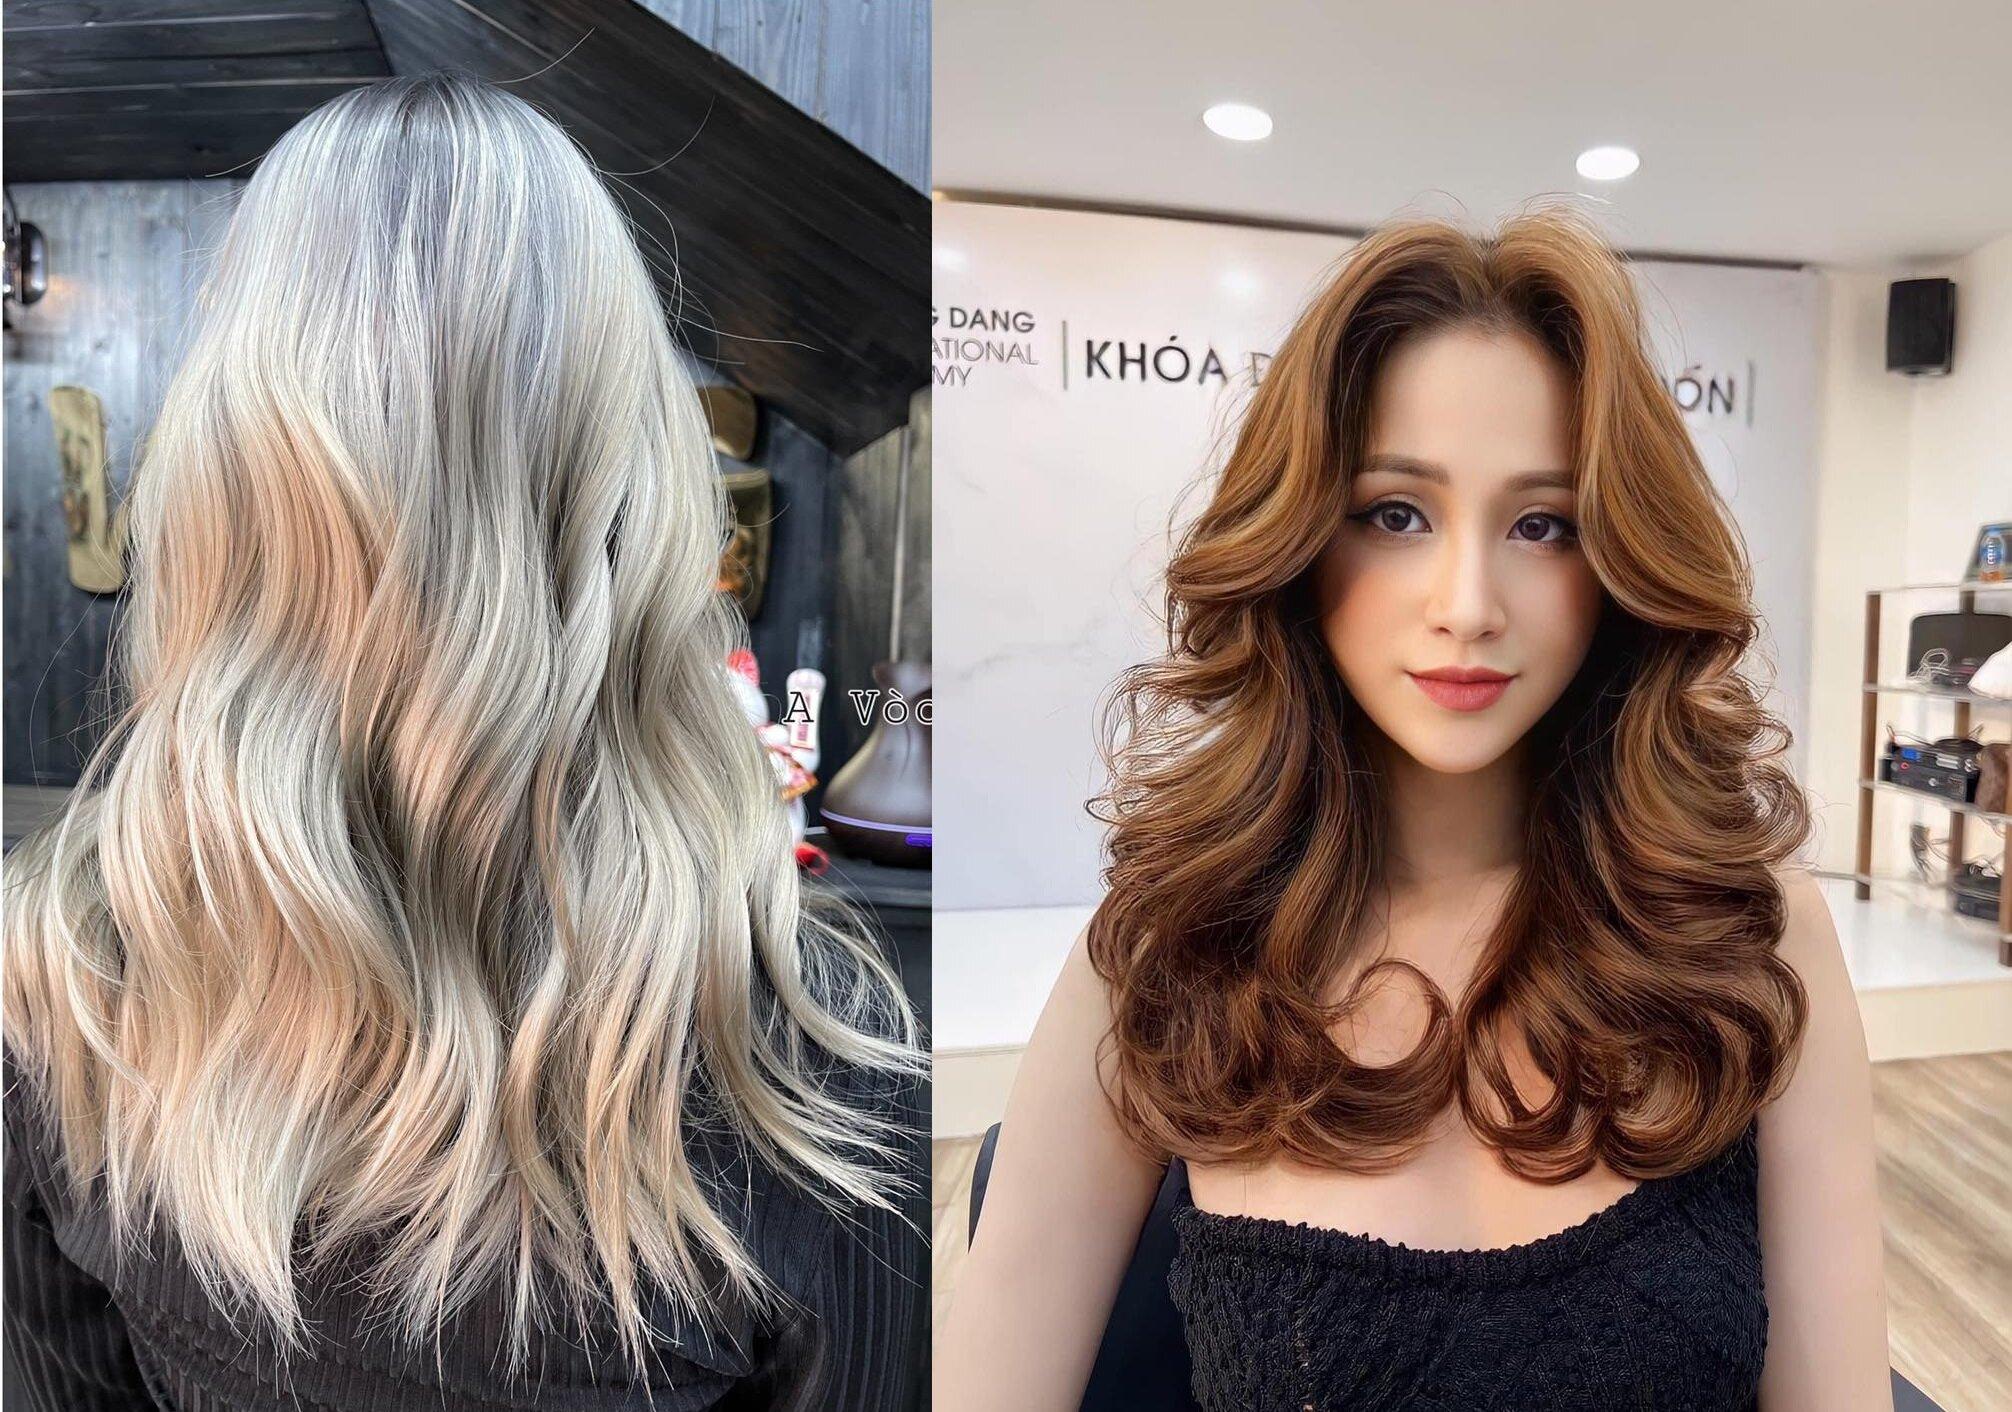 Bạn đang tìm kiếm một kiểu tóc mới cho mùa thu này? Hãy xem ngay hình ảnh cắt tóc layer nữ đẹp ở tphcm để có thêm đề xuất cho tóc của mình. Sắc cạnh và nữ tính, kiểu tóc layer sẽ khiến bạn tỏa sáng hơn mỗi ngày.